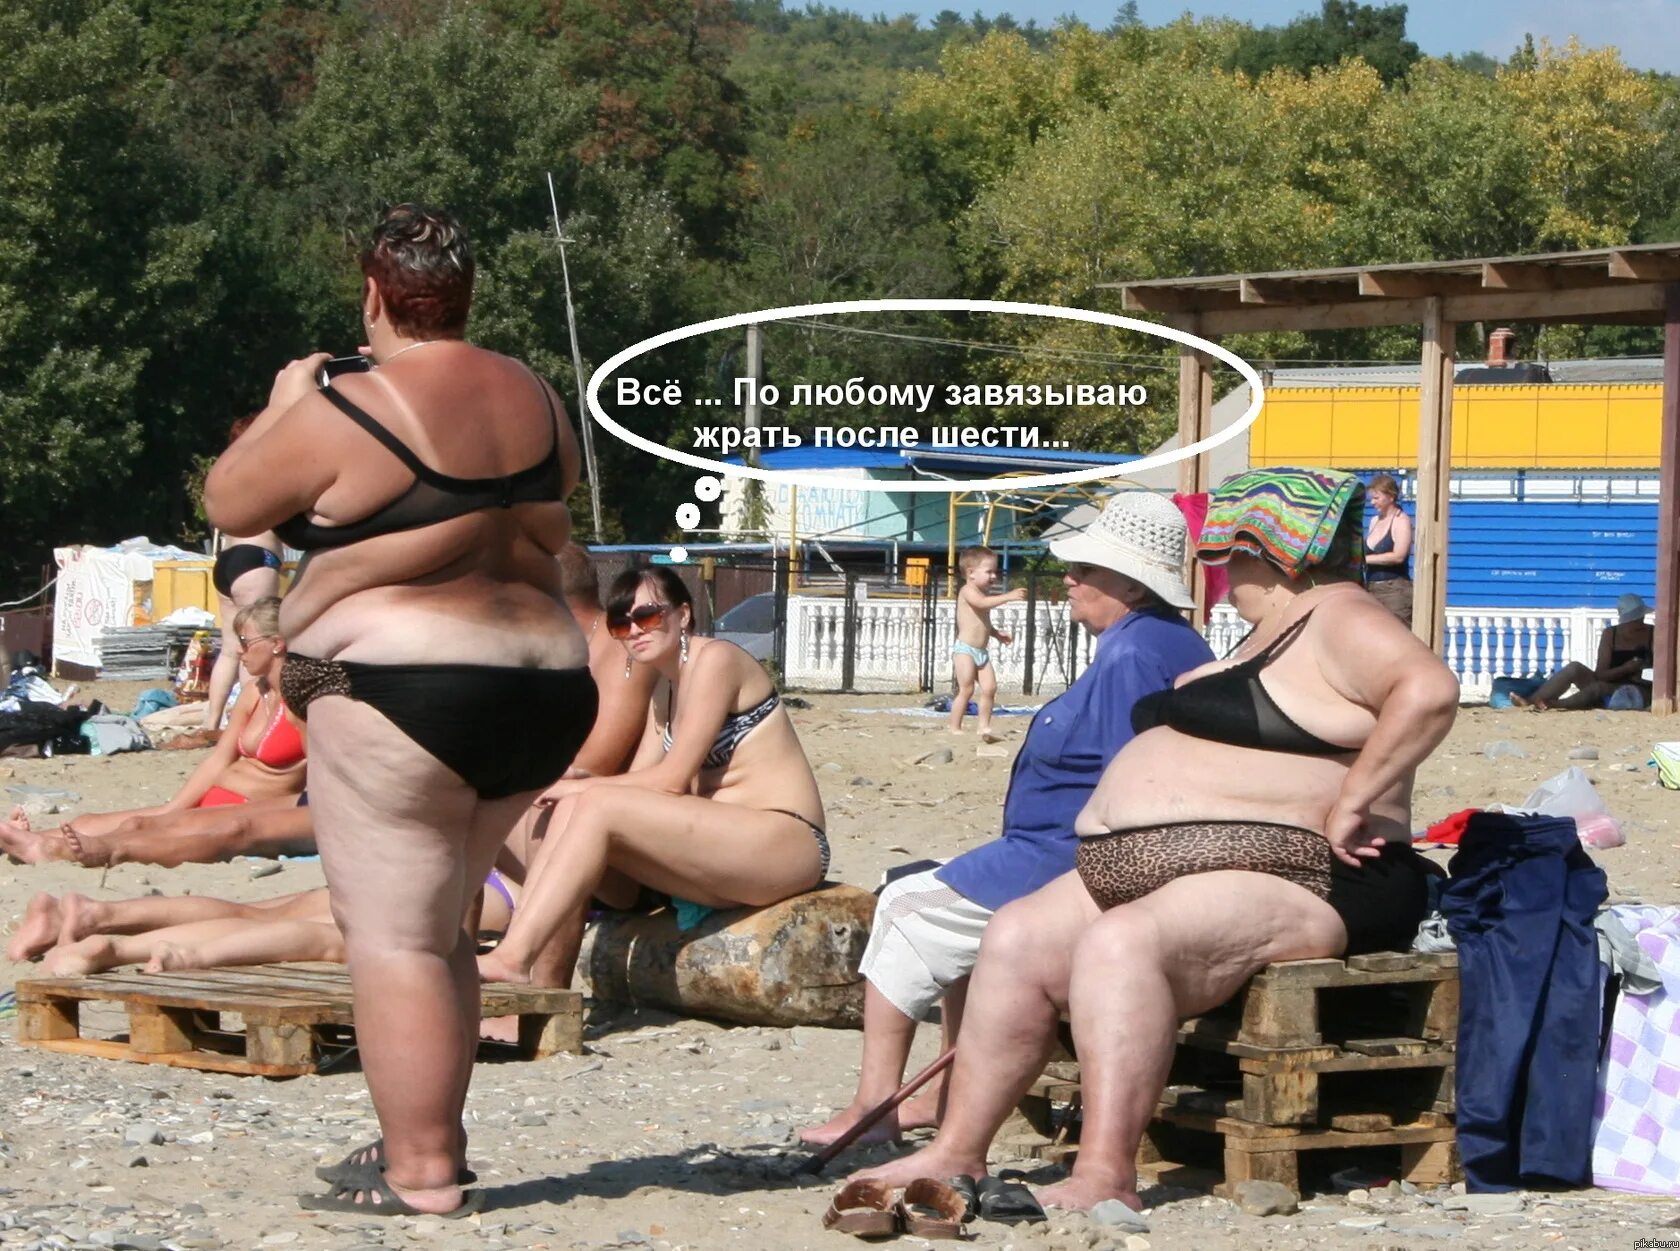 Жирные женщины на пляже смешные. Толстая женщина на пляже. Юмор приколы поржать